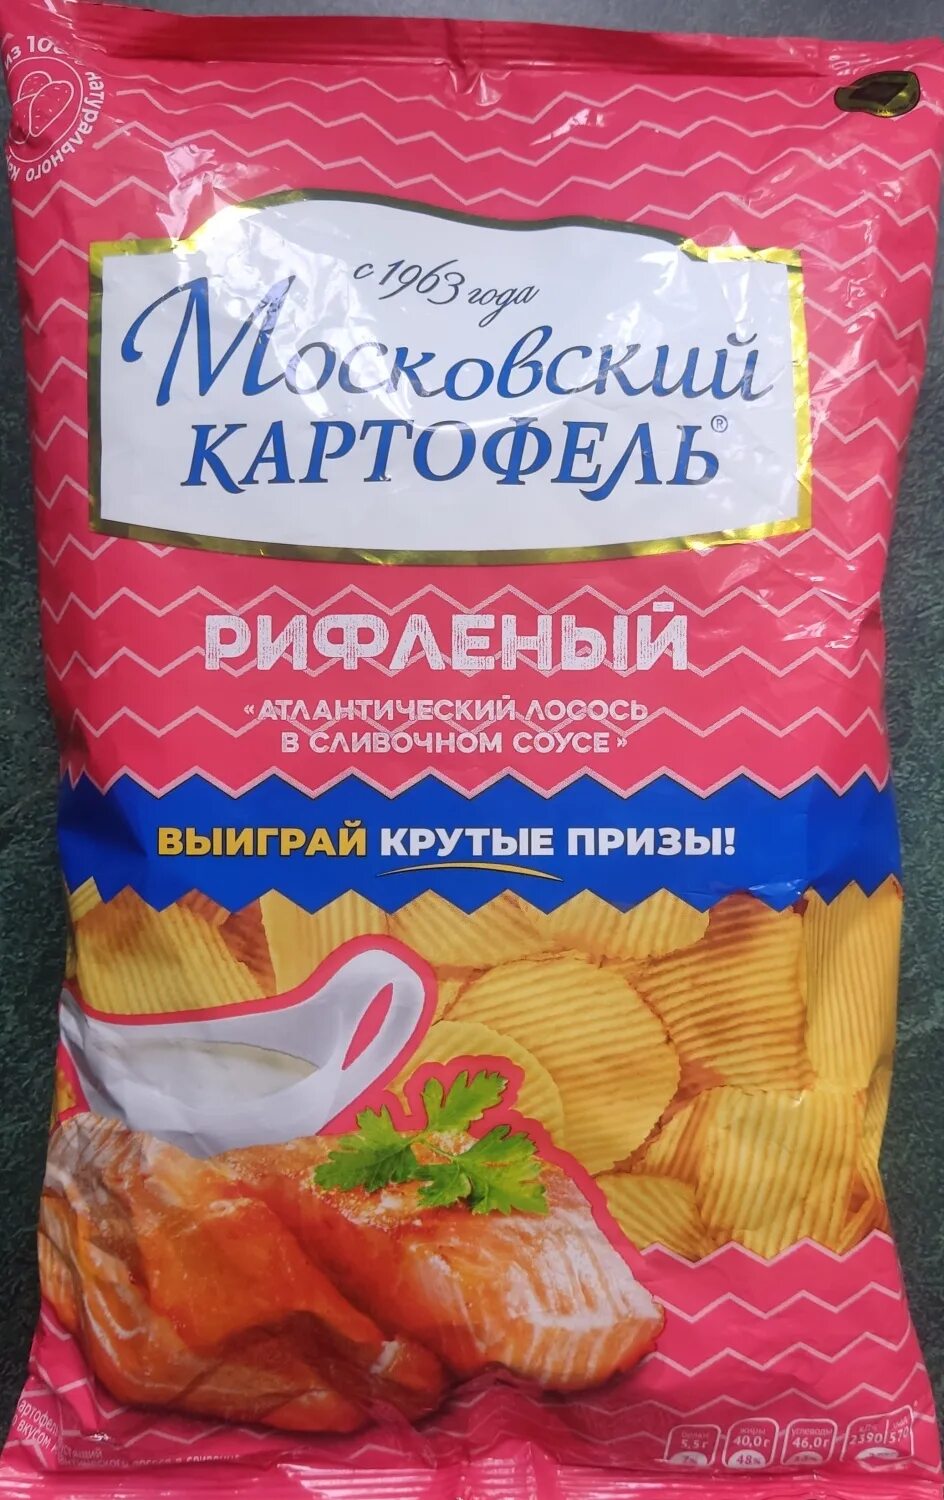 Московский картофель отзывы